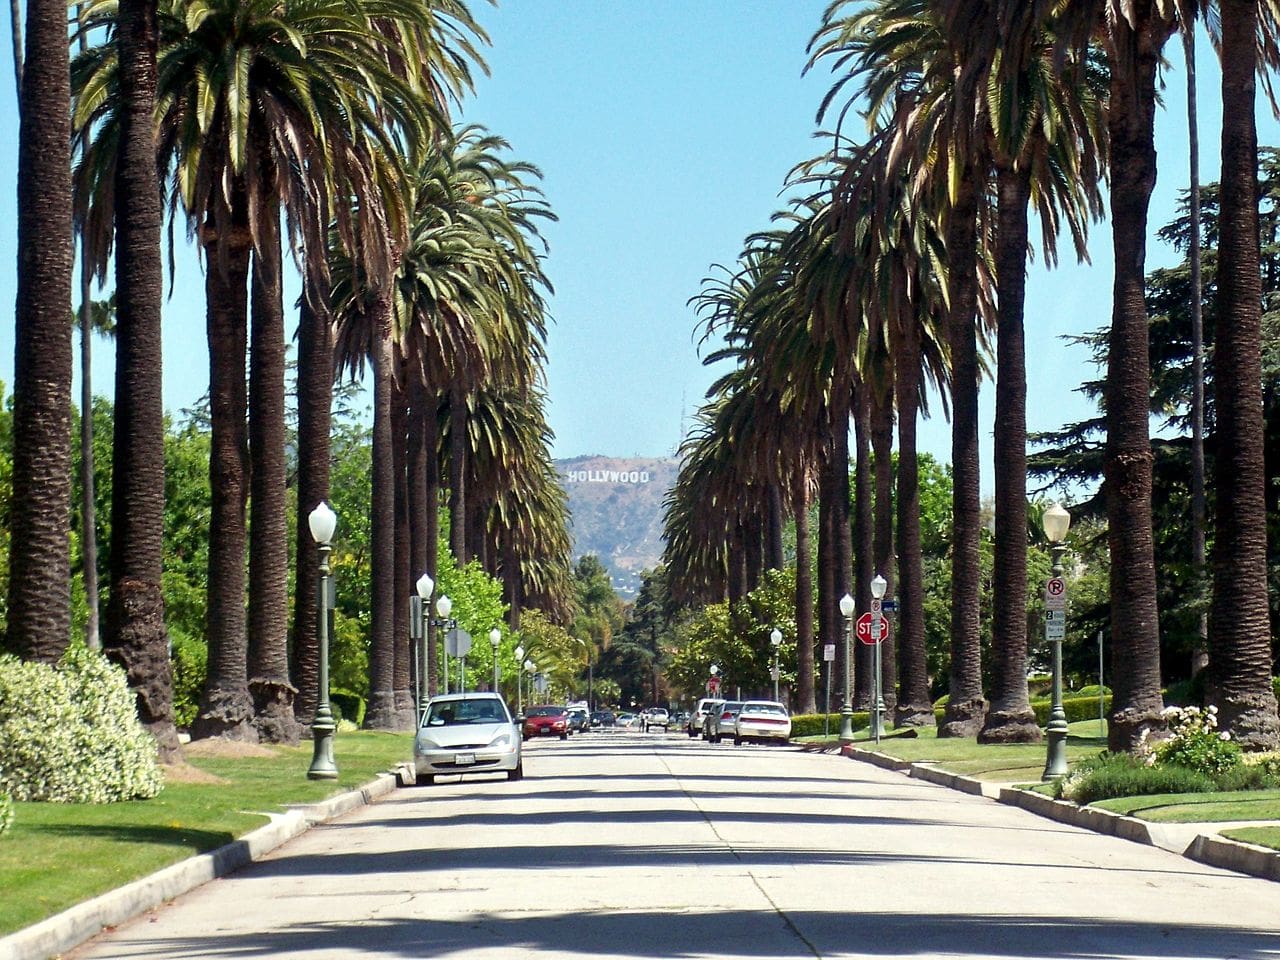 Hancock Park road in Los Angeles